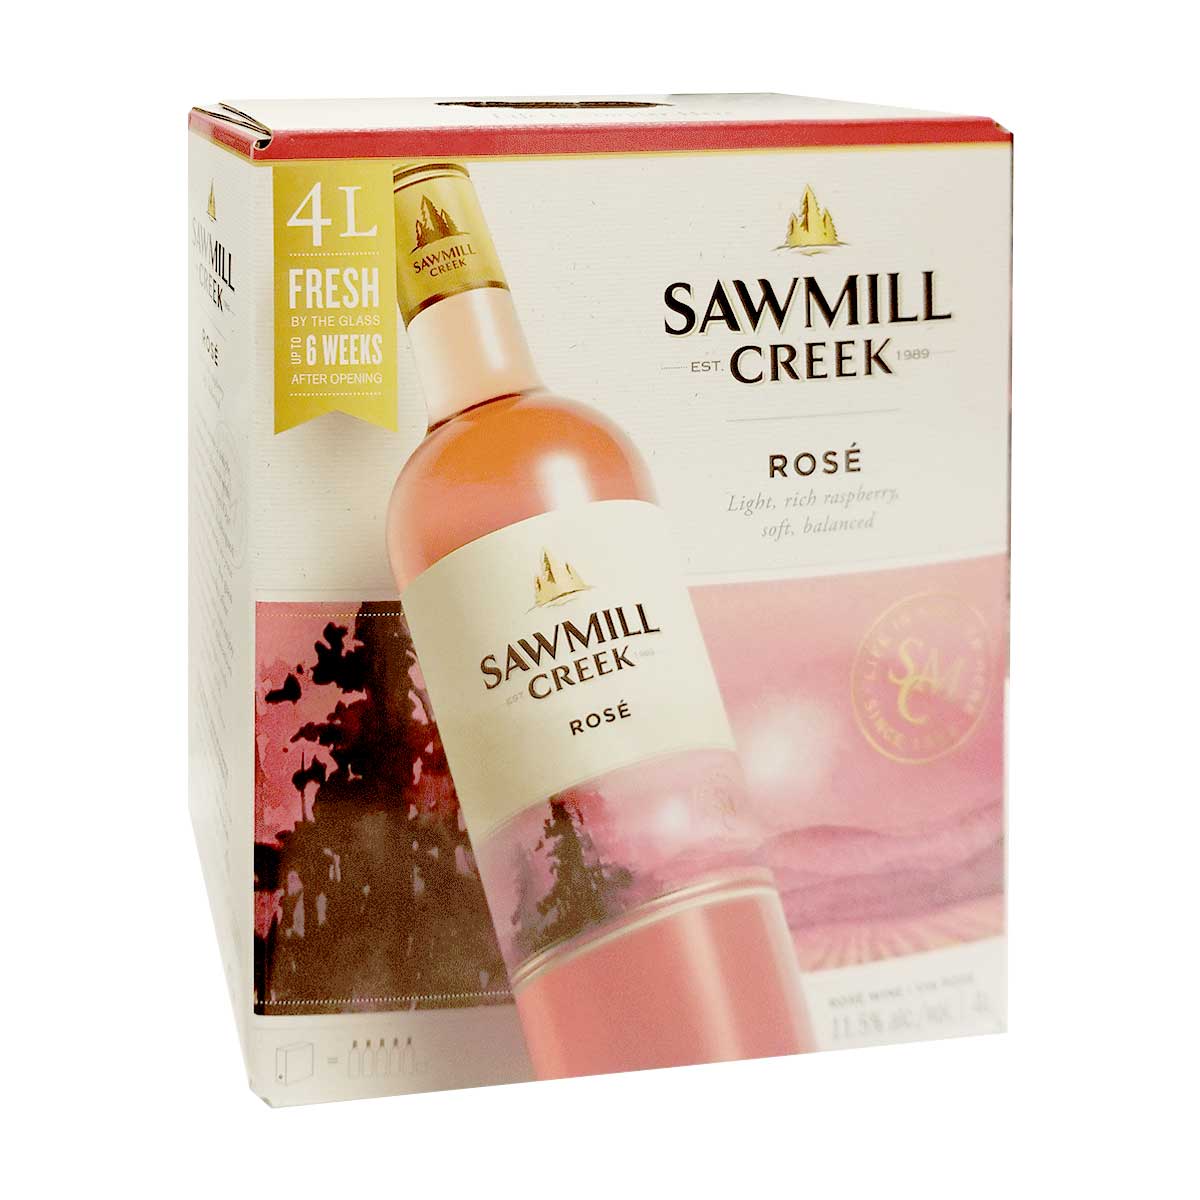 Sawmill Creek Rose 4L Box